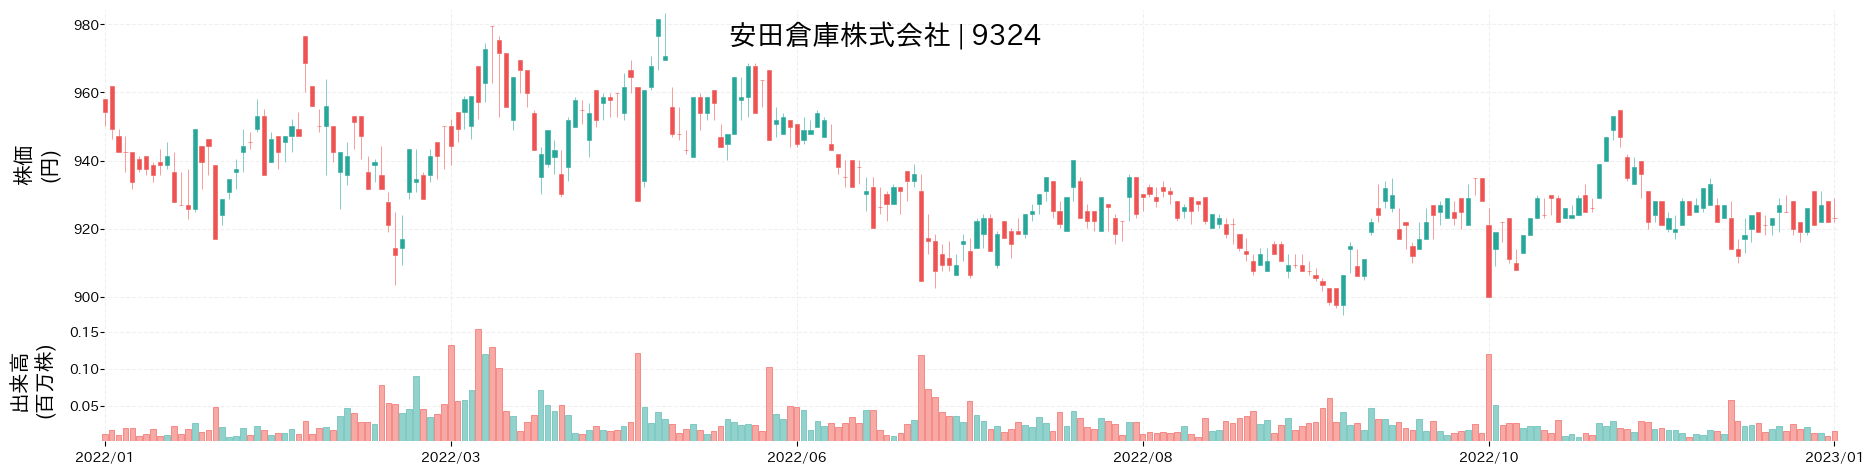 安田倉庫の株価推移(2022)